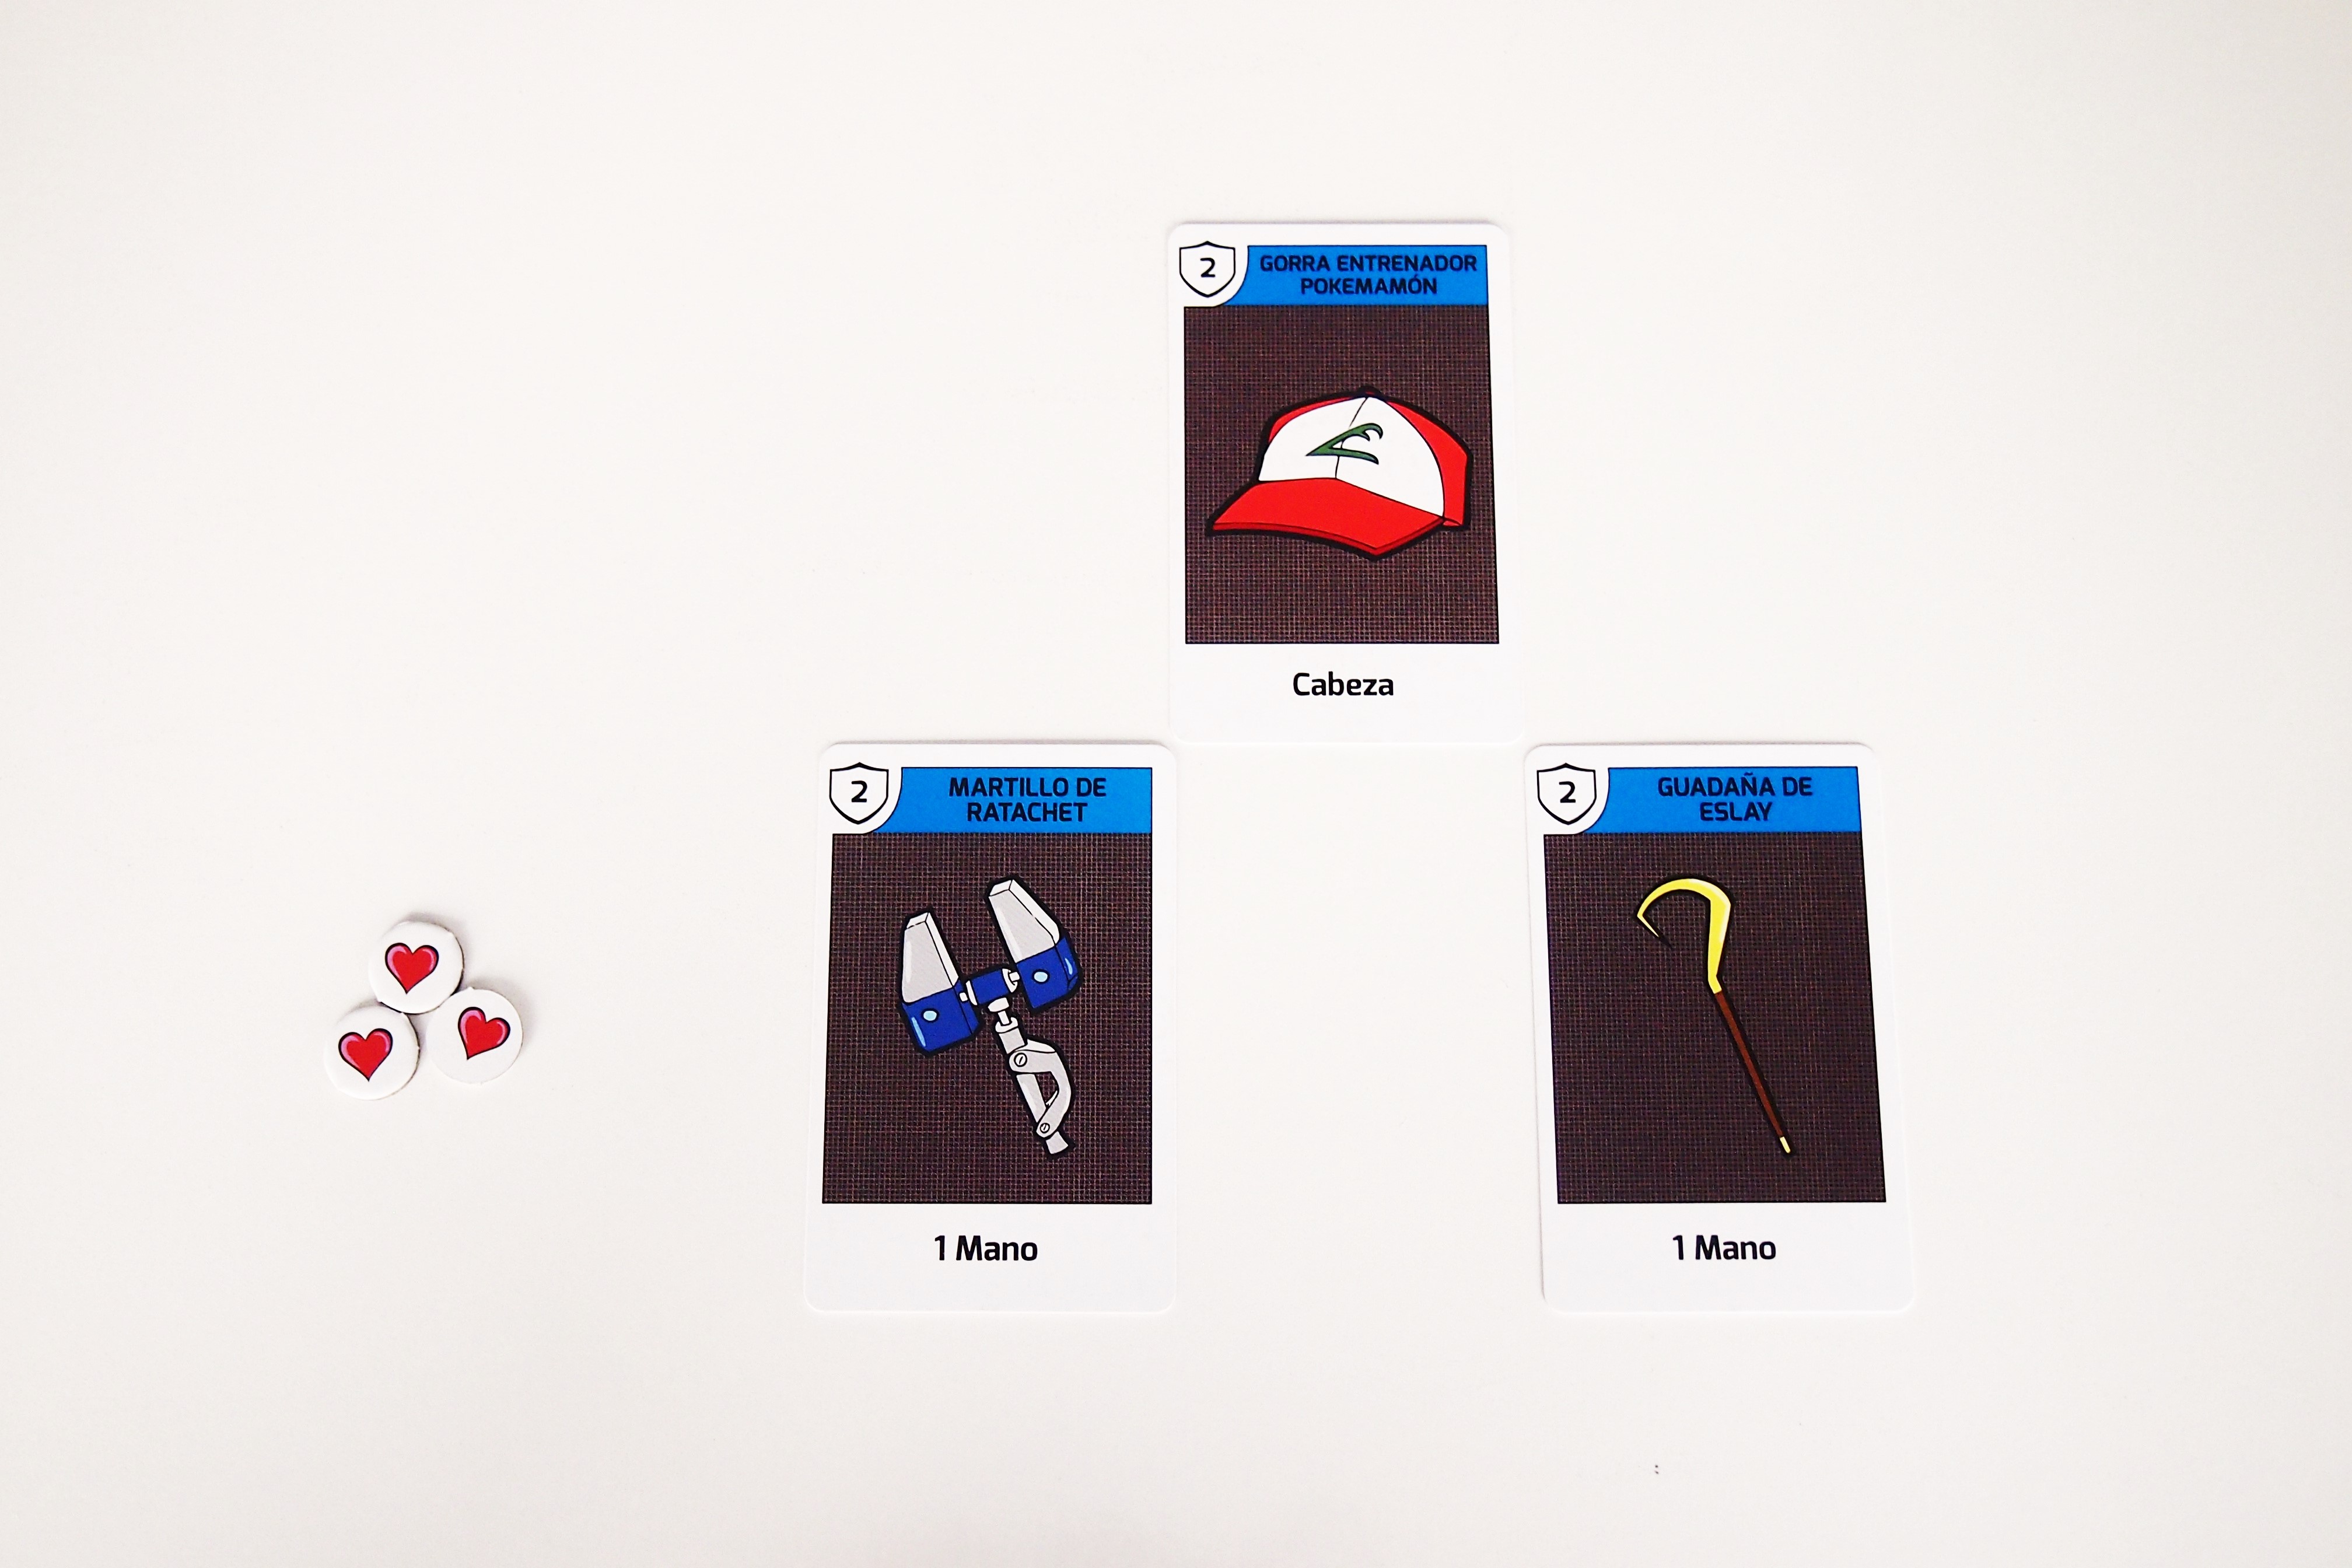 Durante su turno, el jugador puede equiparse con cartas de su mano y jugar maldiciones y objetos. 